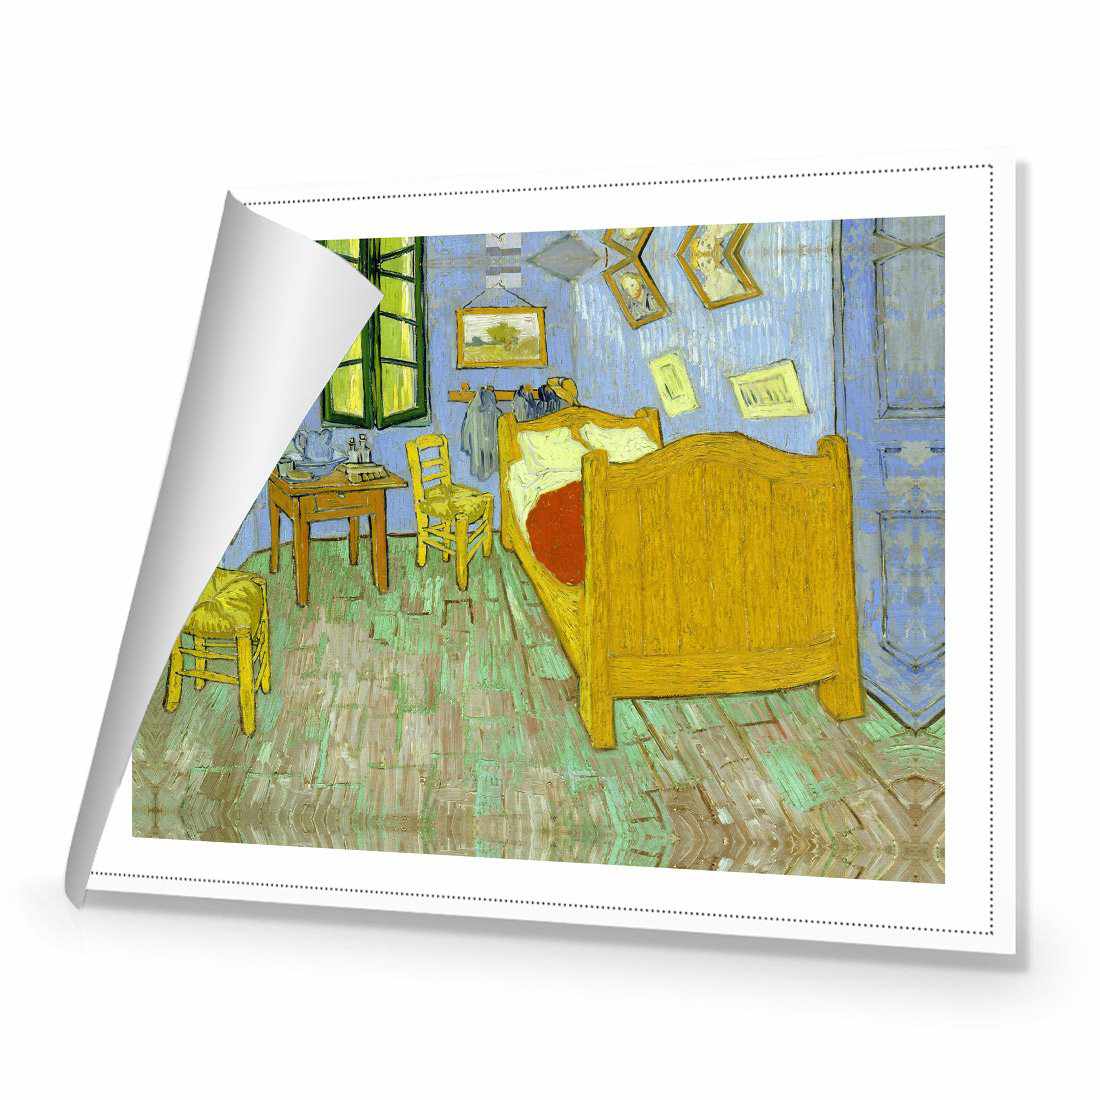 Vincent's Bedroom - Van Gogh Canvas Art-Canvas-Wall Art Designs-45x30cm-Rolled Canvas-Wall Art Designs